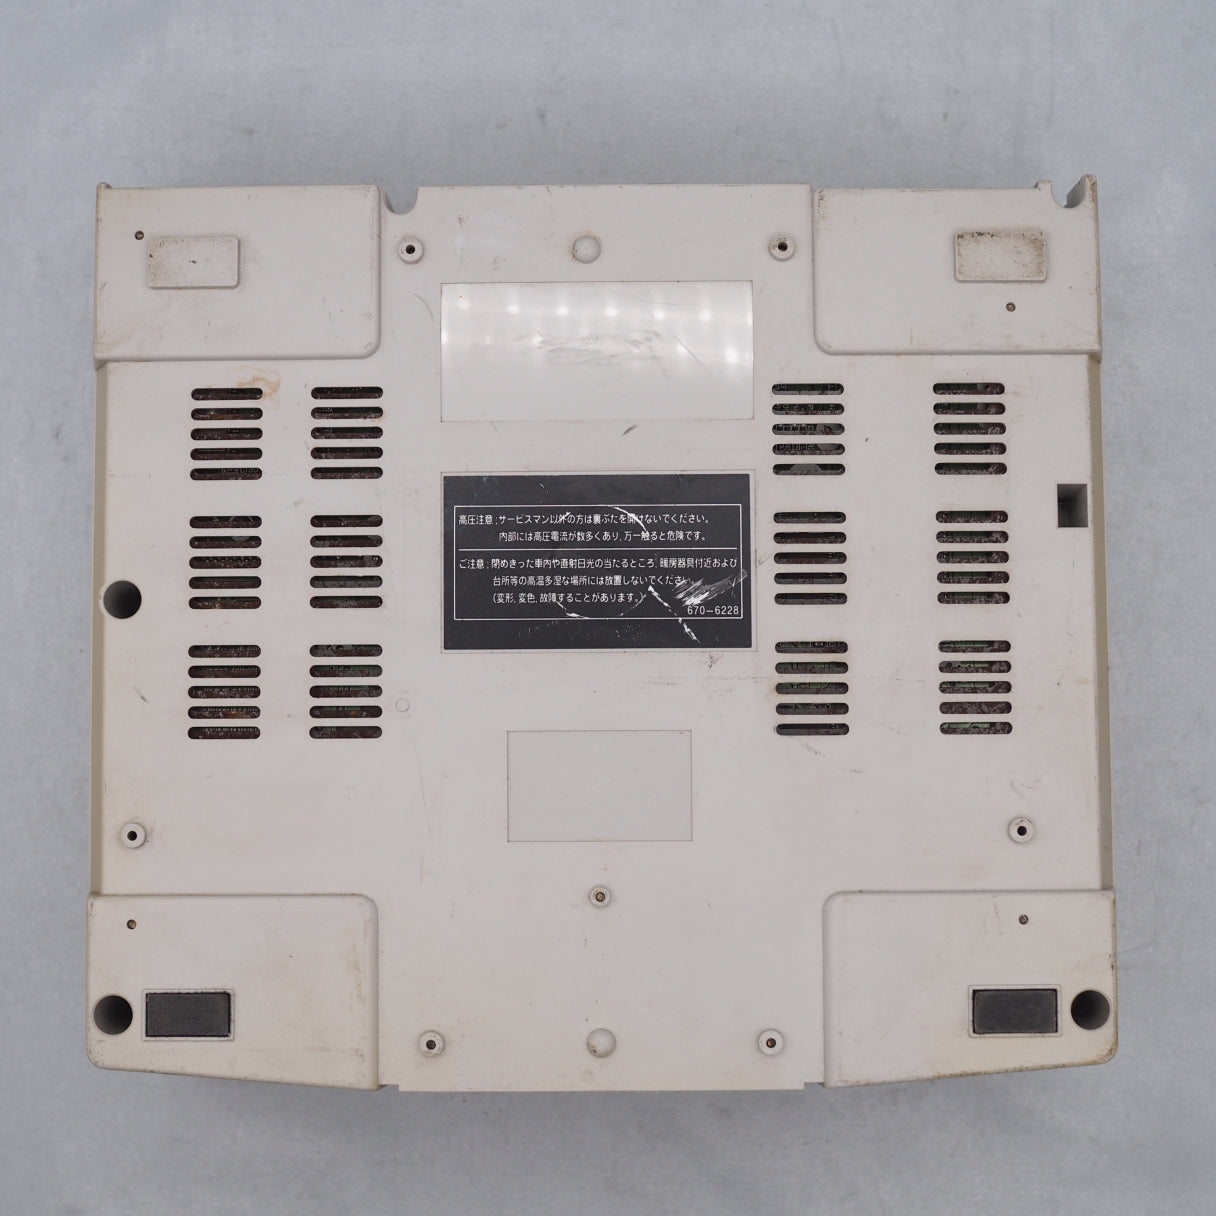 [JUNK] SEGA SATURN Console system HST-3220